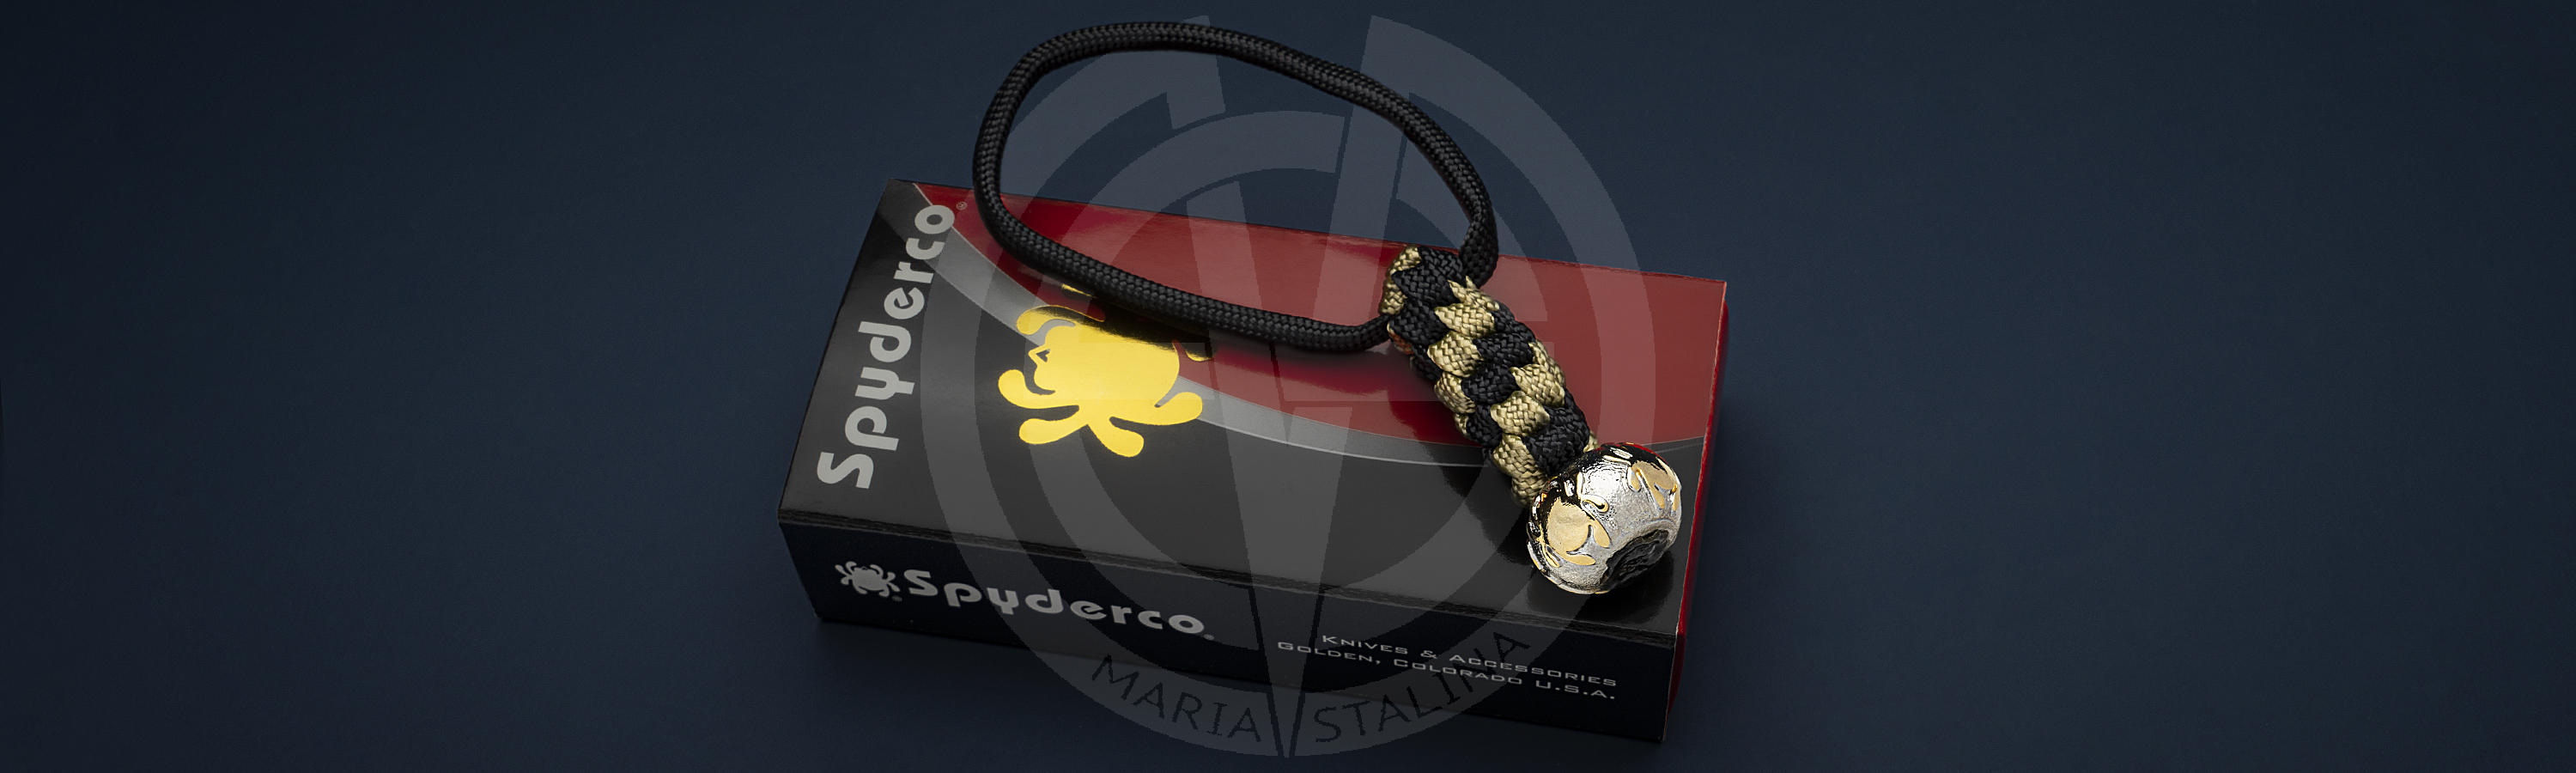 Jewelry-quality bead Spyderco 3FLY